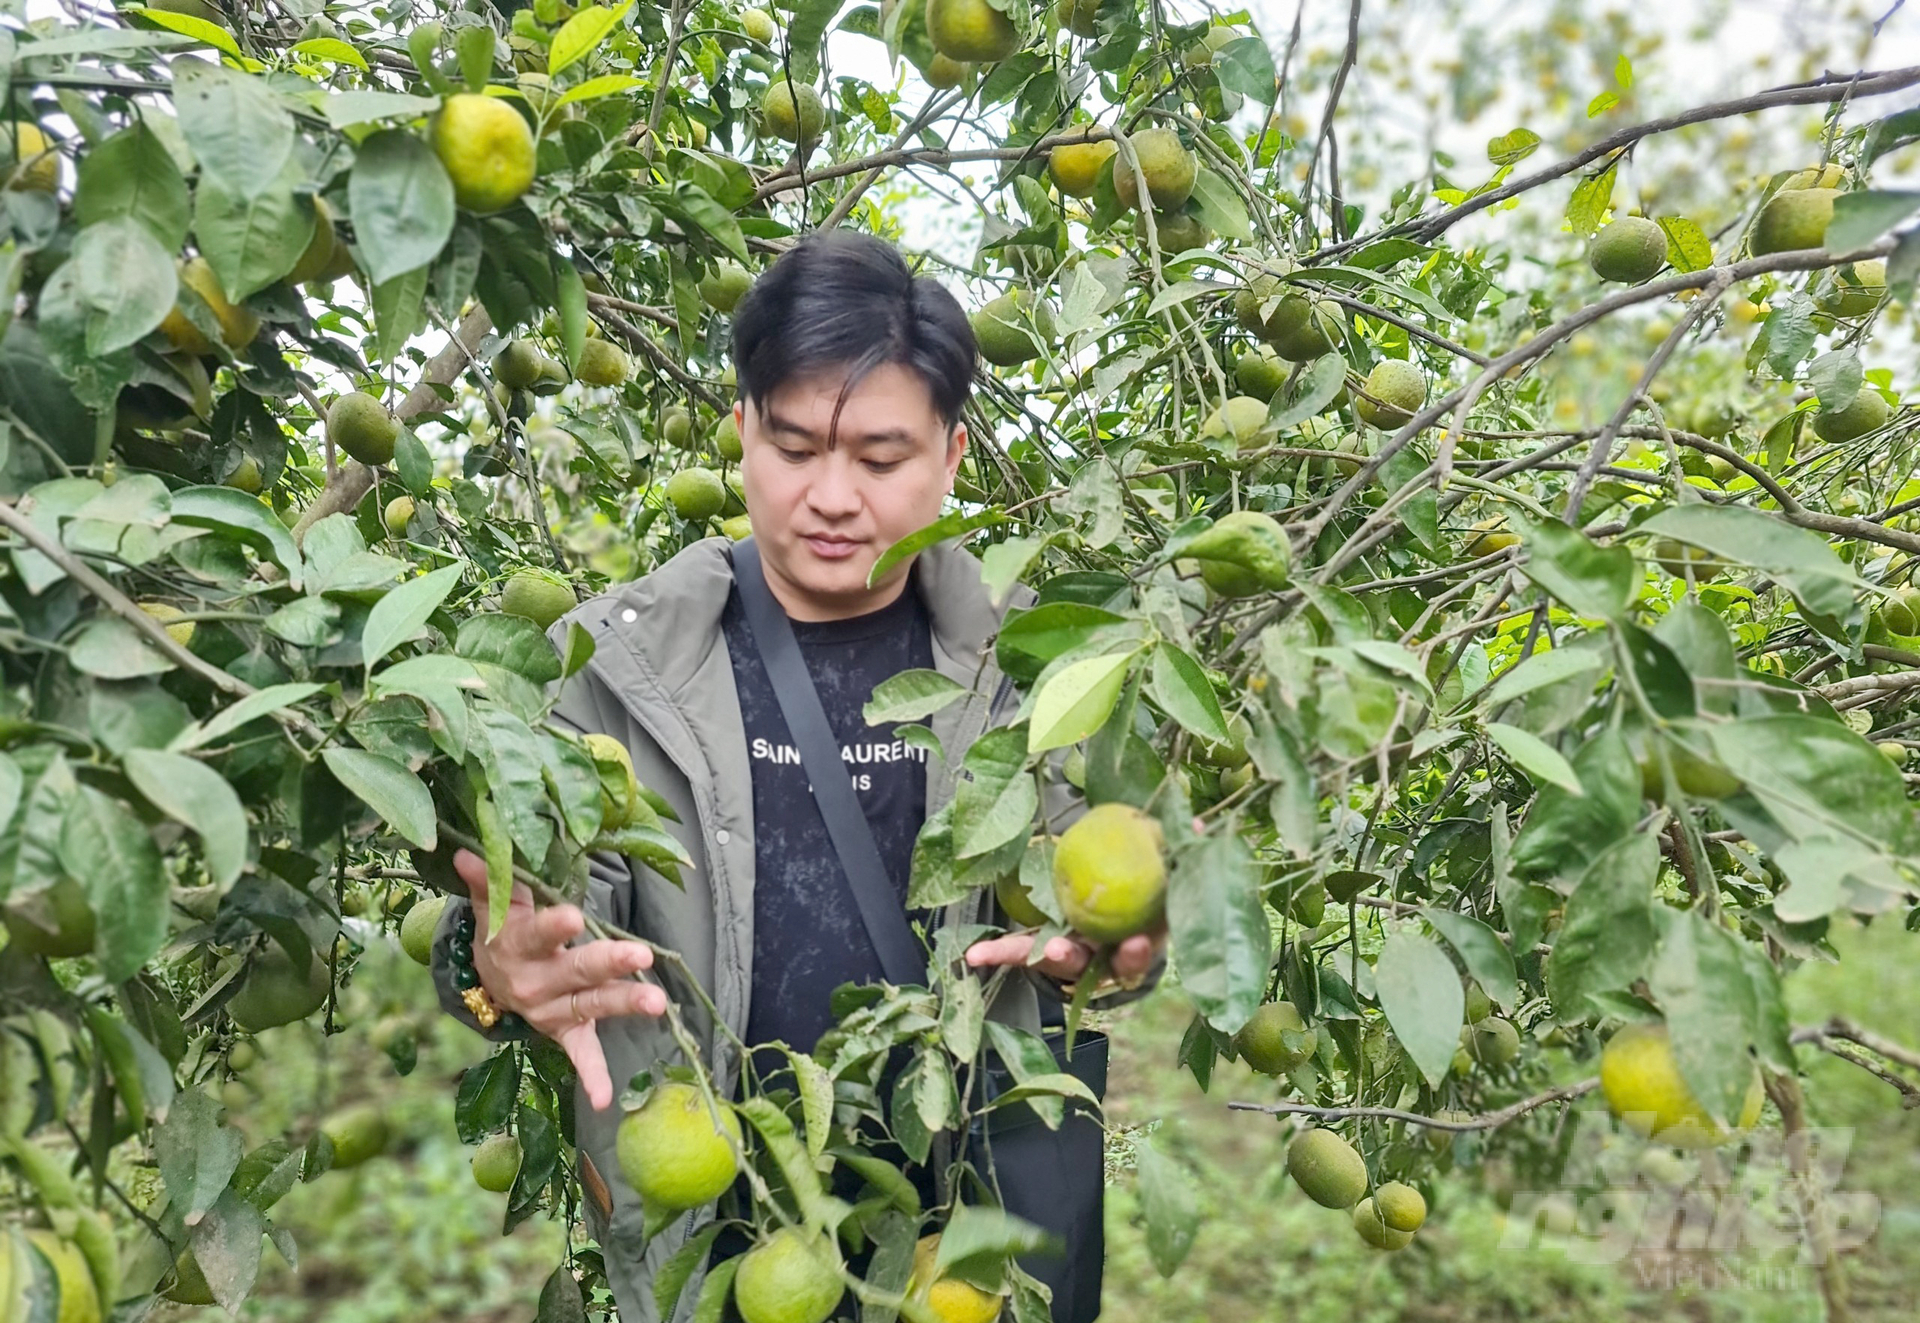 Cây cam trên đà lao dốc không phanh đã ảnh hưởng không nhỏ đến chủ trương phát triển cây trồng có múi của tỉnh Nghệ An. Ảnh: Quốc Toản.